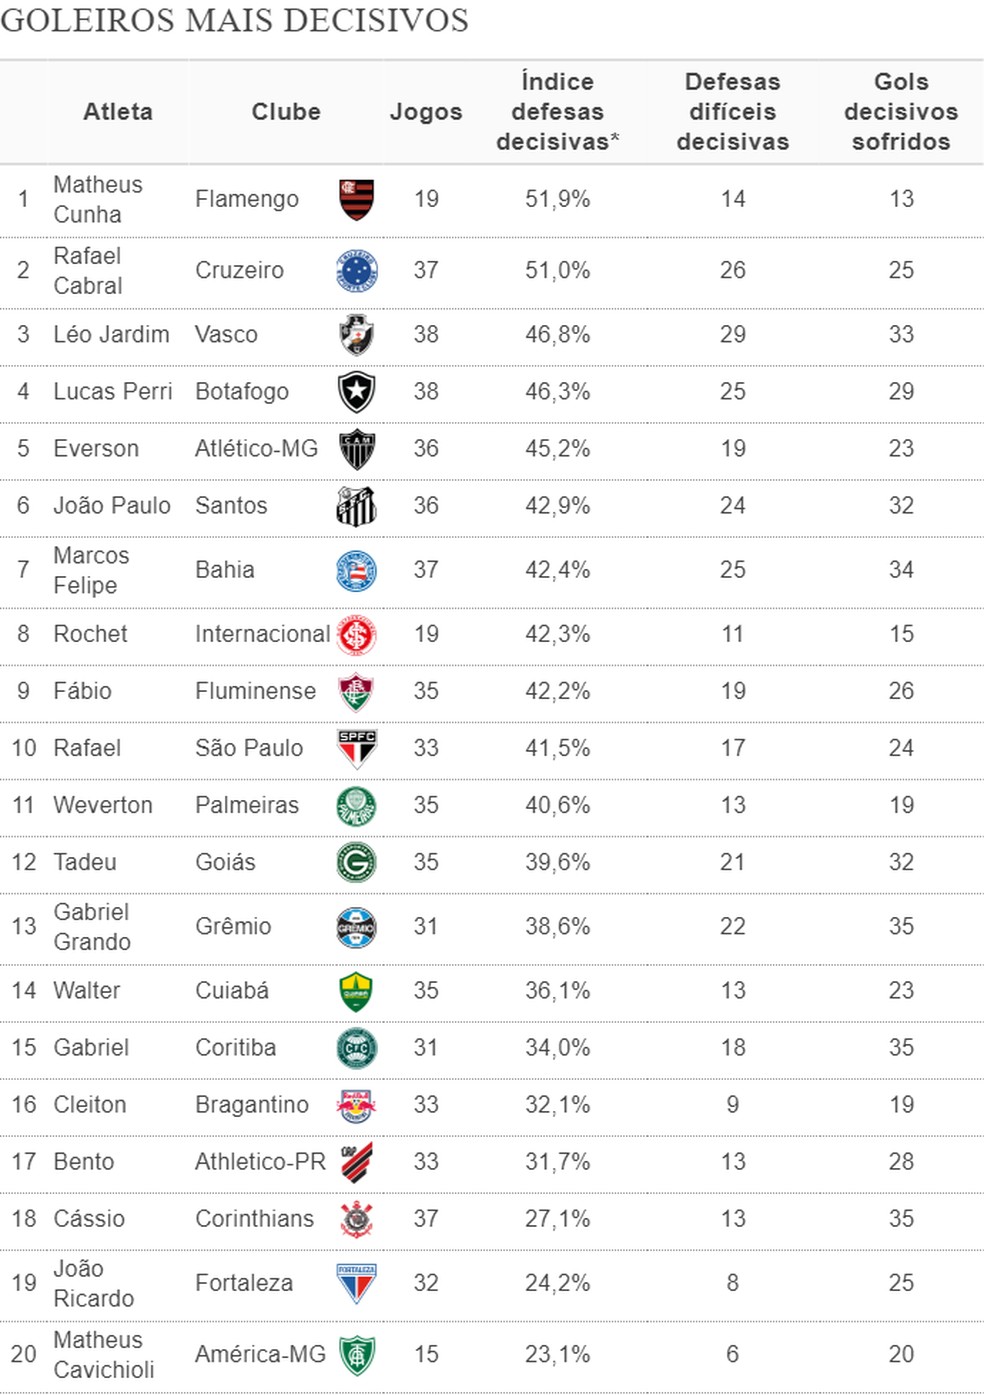 Rankings mostram os goleiros mais decisivos do Brasileirão e quem